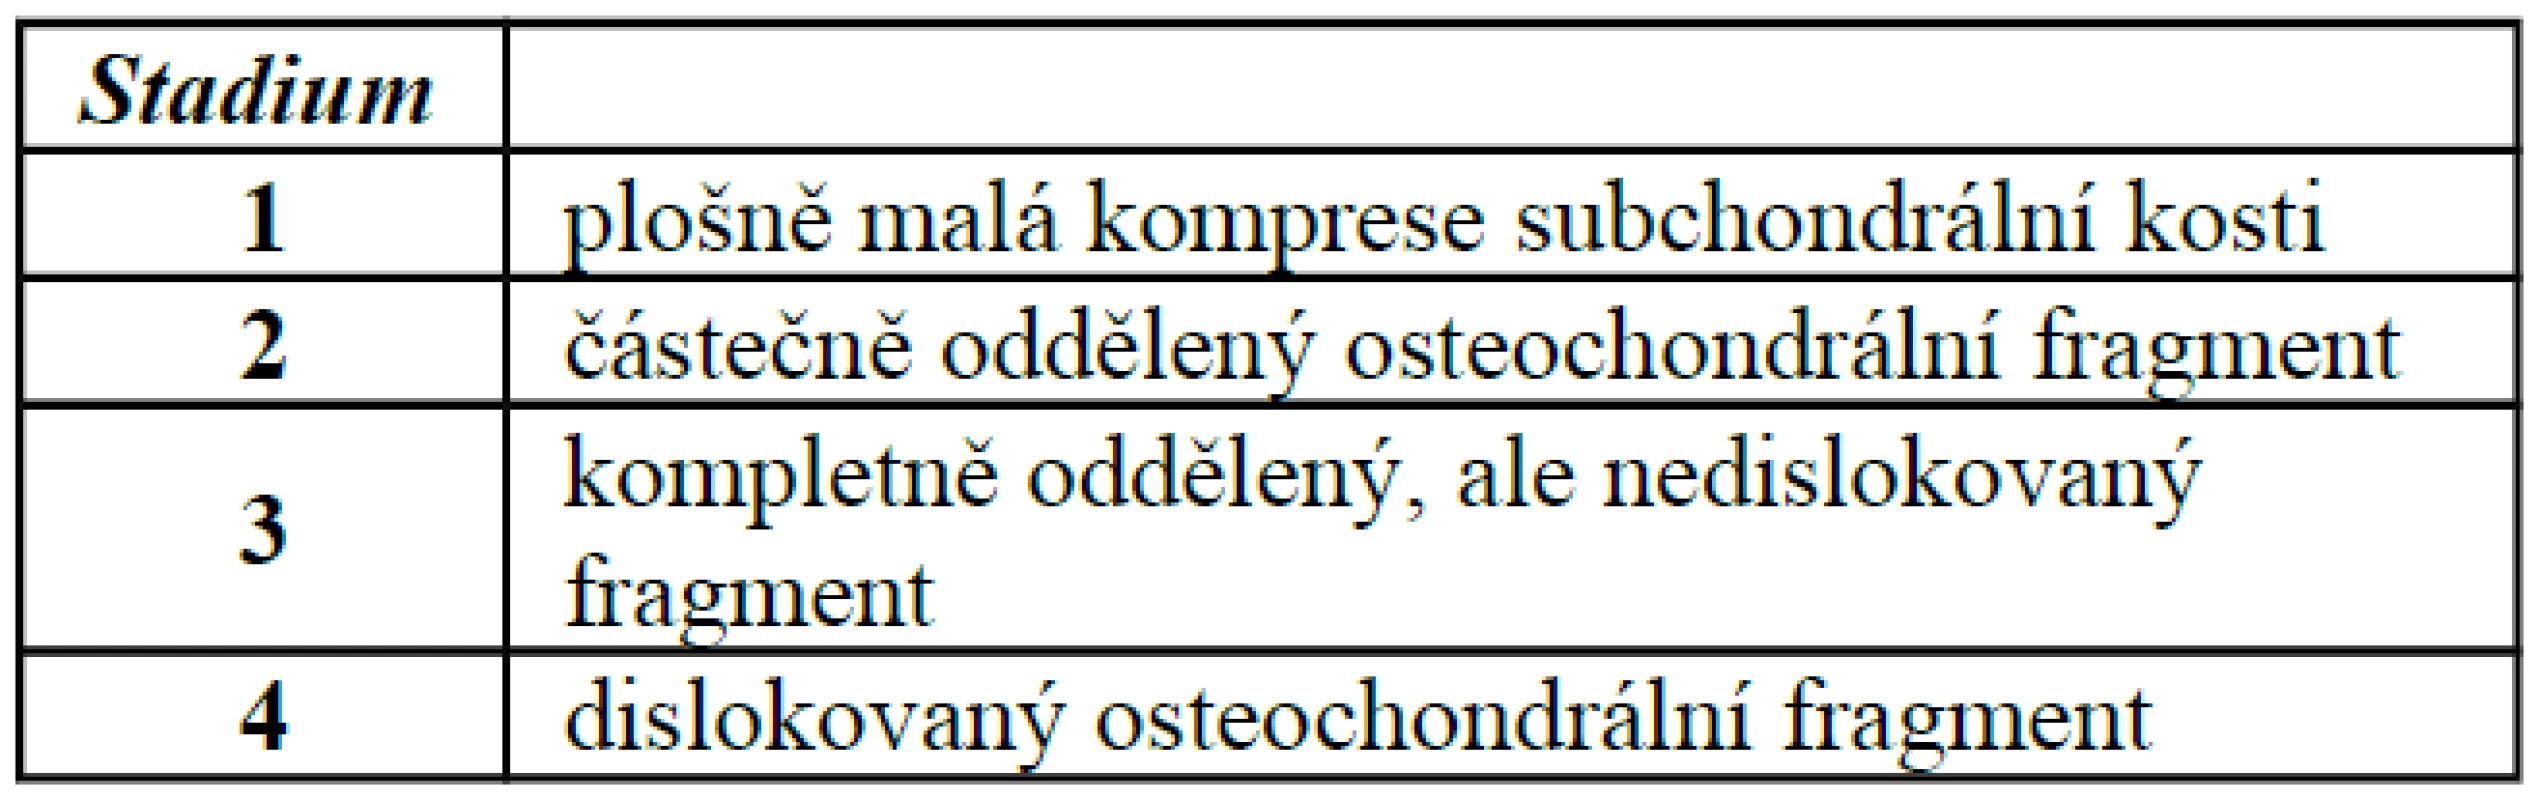 Klasifikace osteochondrálních zlomenin trochley talu podle Berndta a Hartyho (1959)